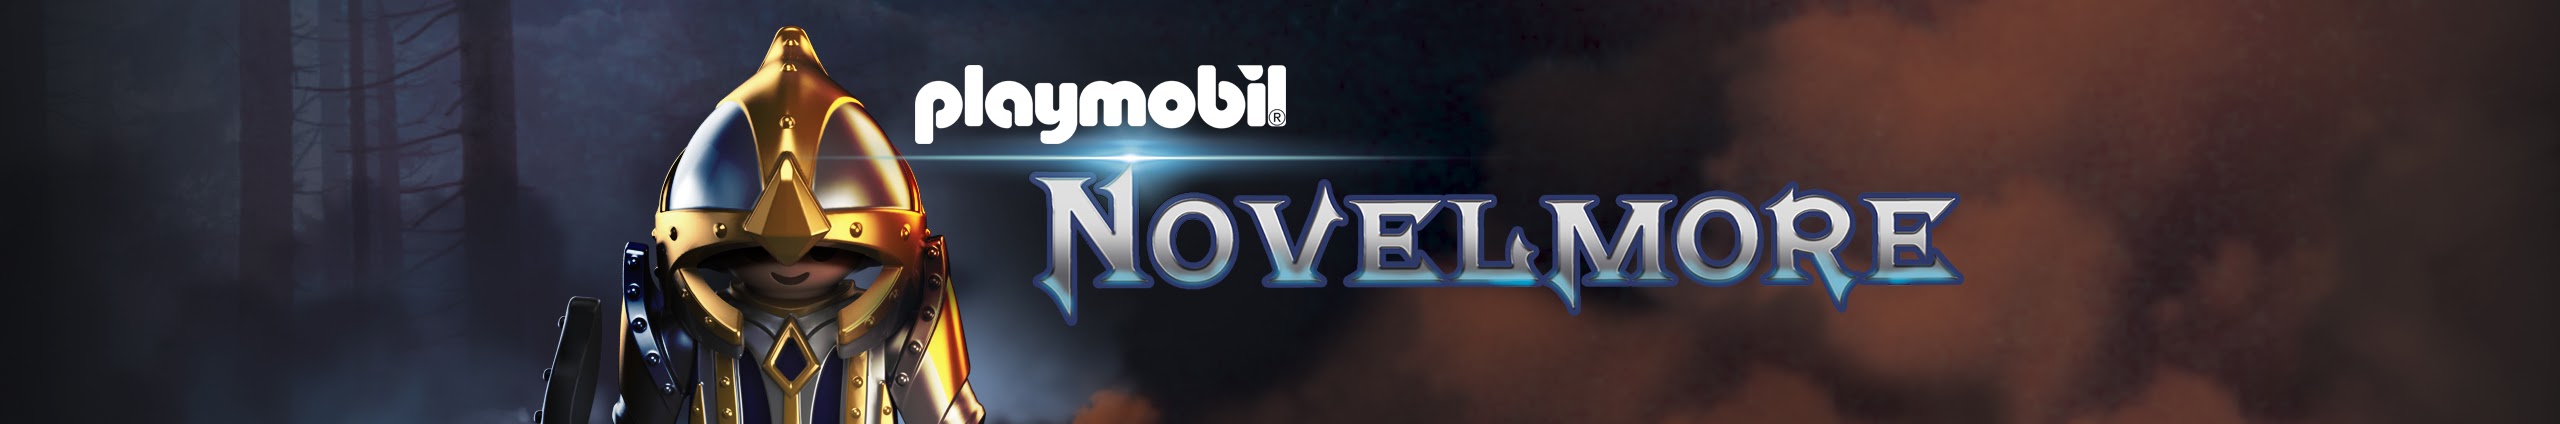 novelmore_header